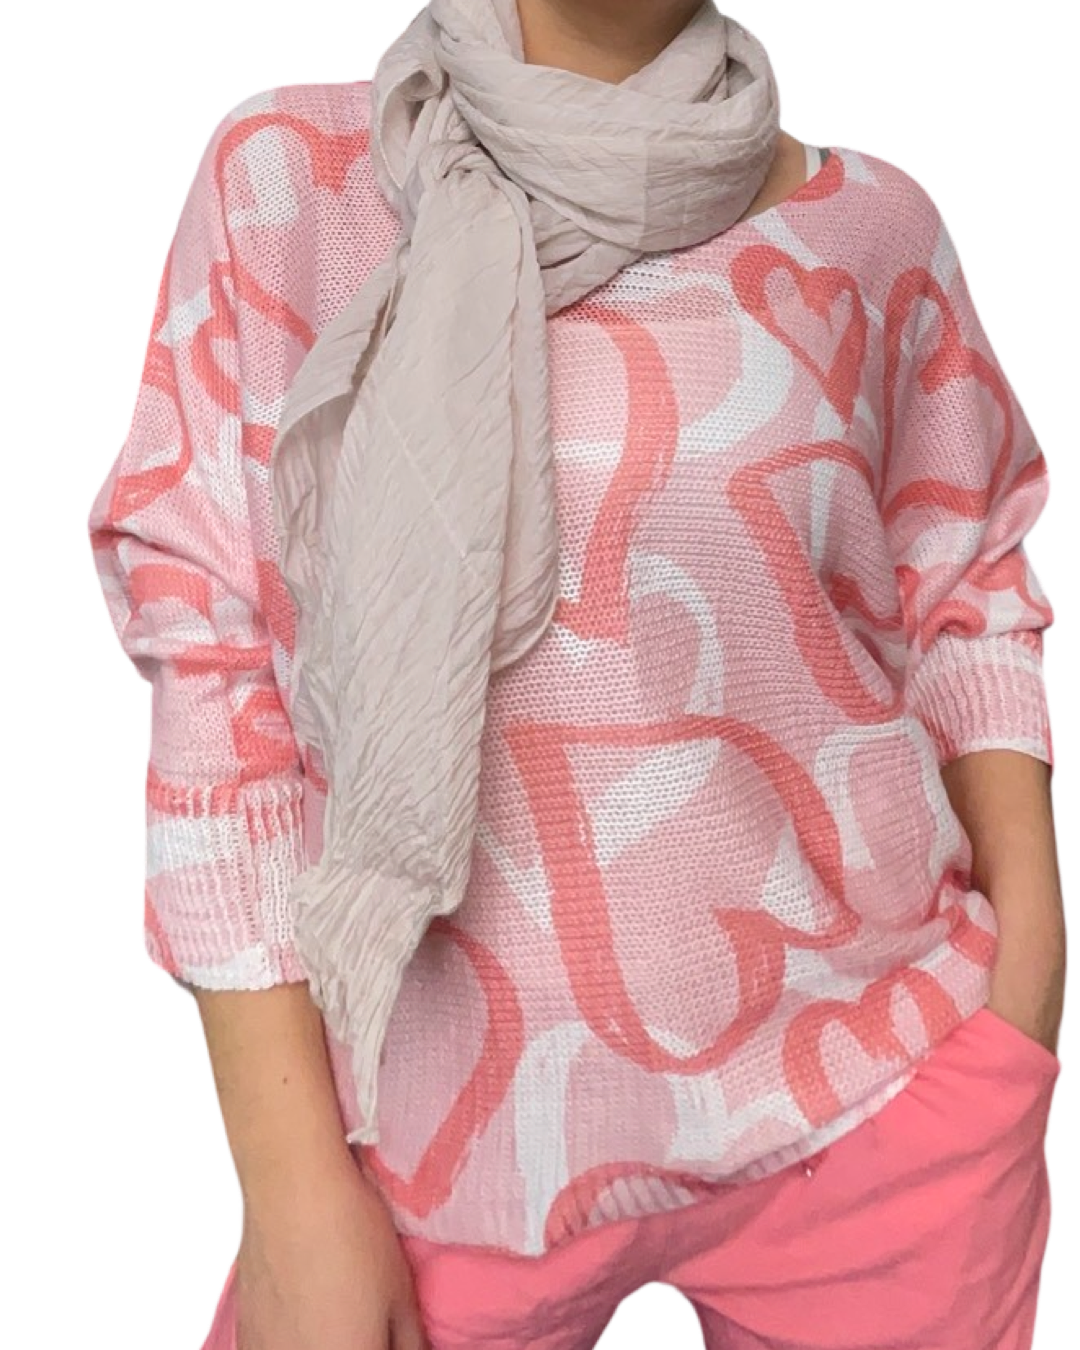 Chandail corail pour femme à manche longue avec imprimé de coeurs avec foulard et pantalons rose